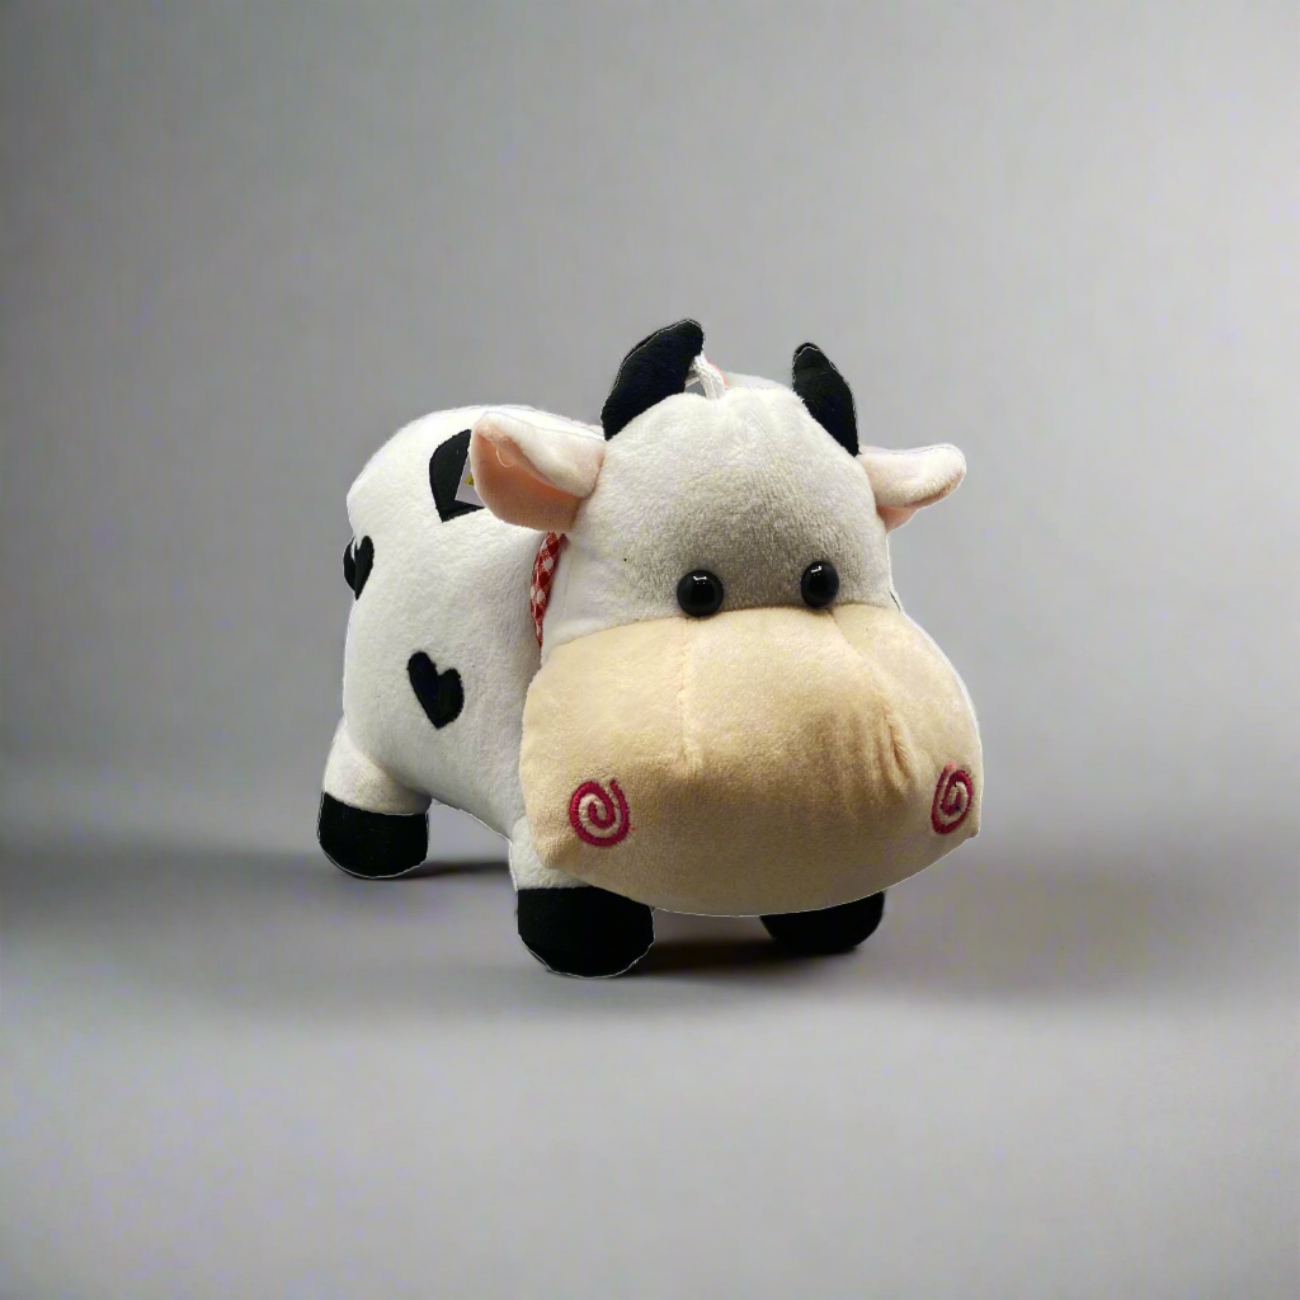 Plush Cow Toy - Soft Stuffed Doll Cushion